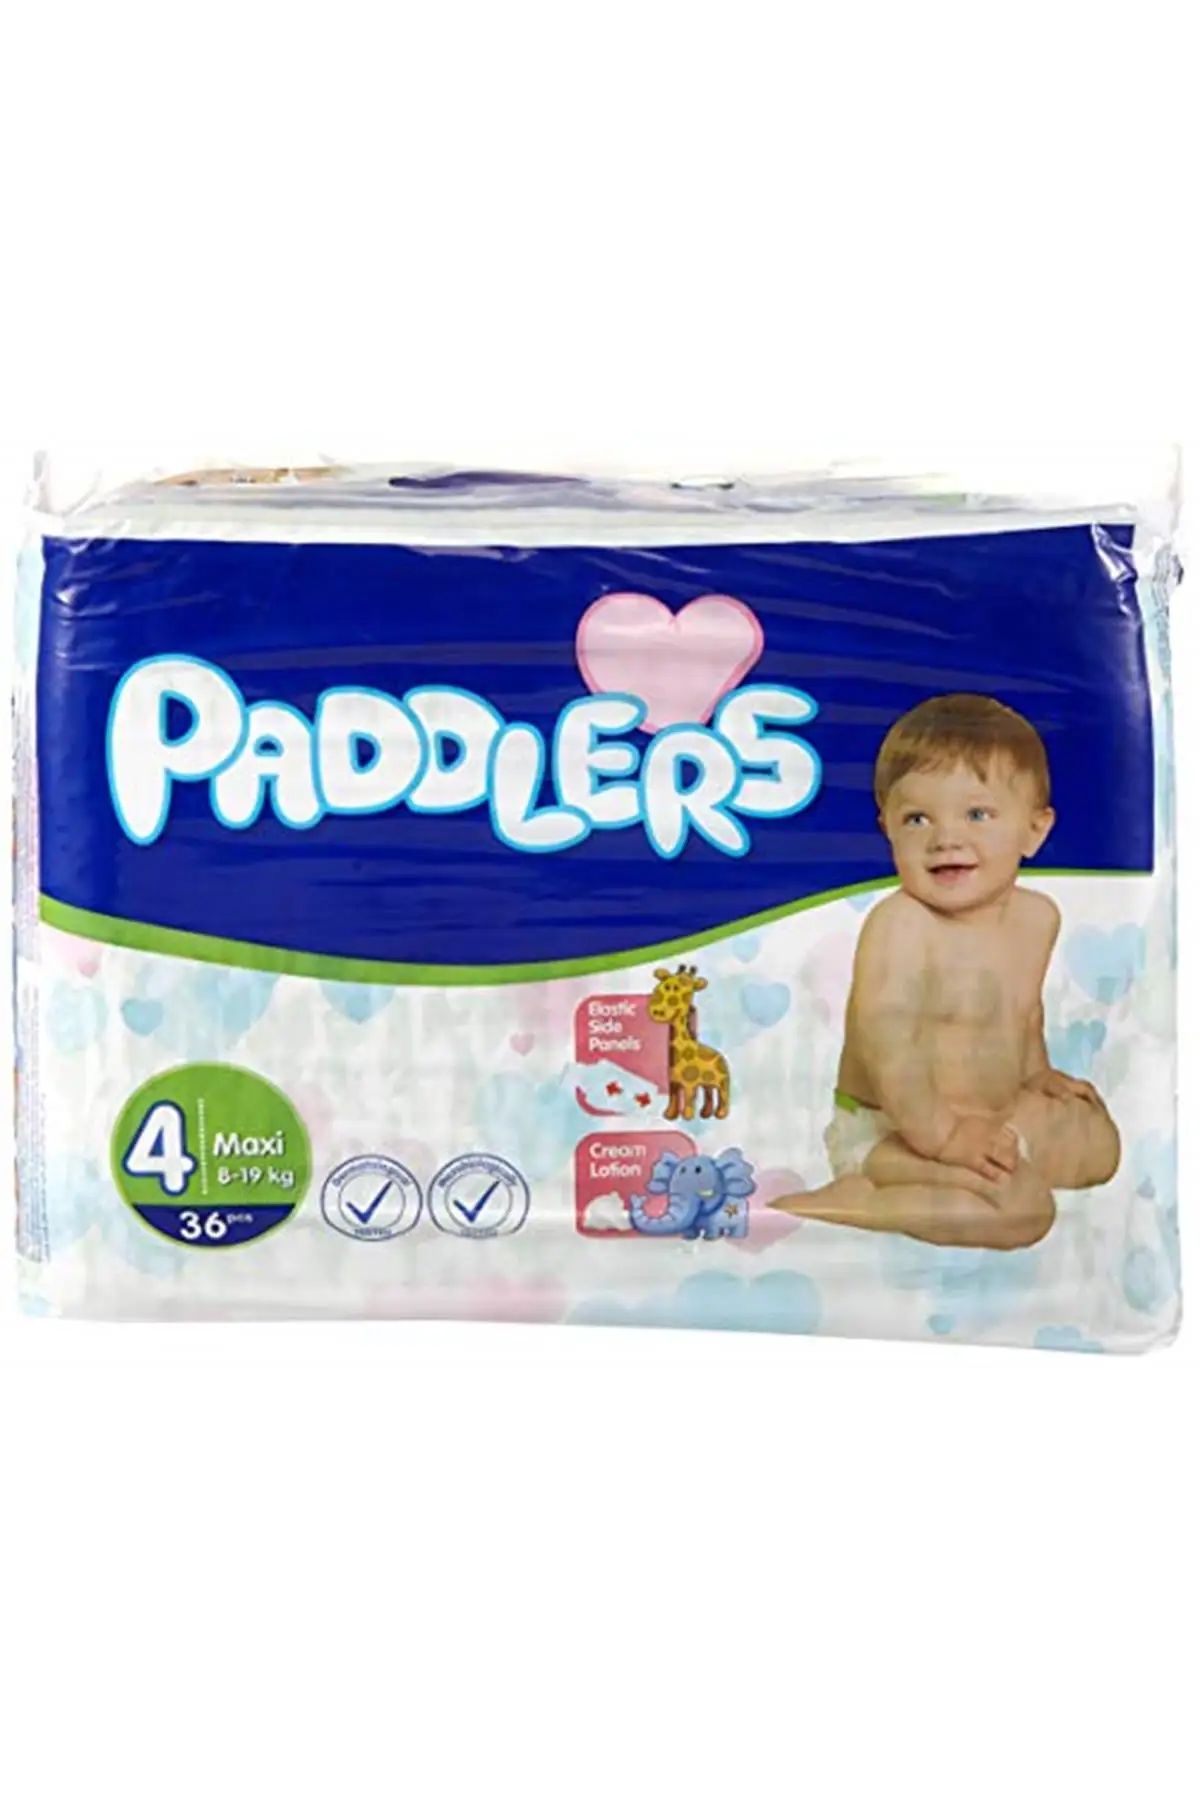 

Бренд: Paddlers Макси 36 шт. (8-19 кг) стая детская ткань, белая Категория: детские подгузники